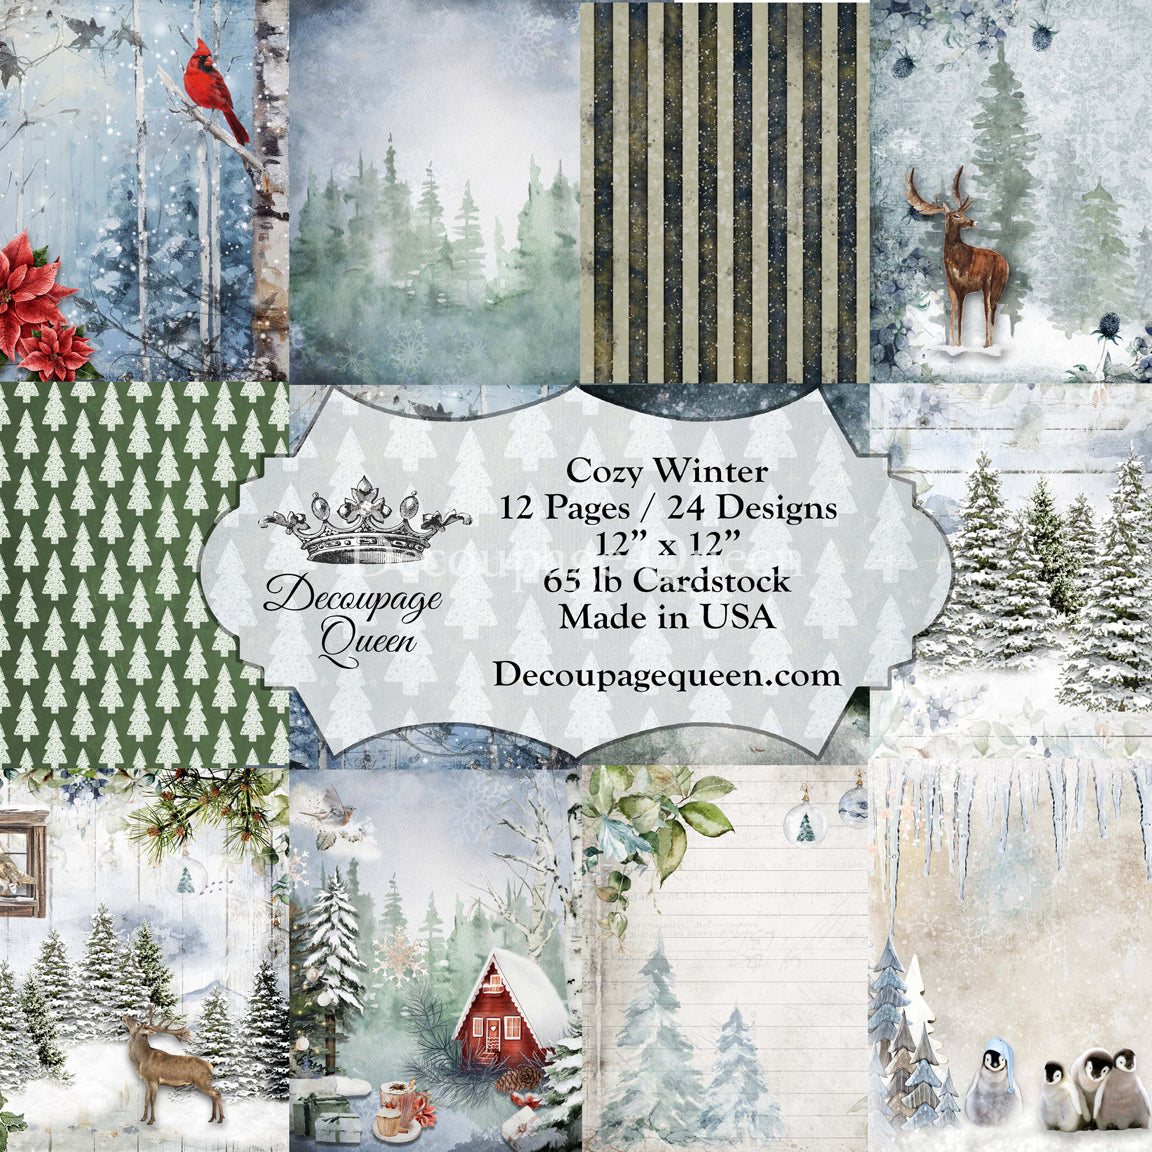 Decoupage Queen Cozy Winter Scrapbook Set - Size 12 x 12